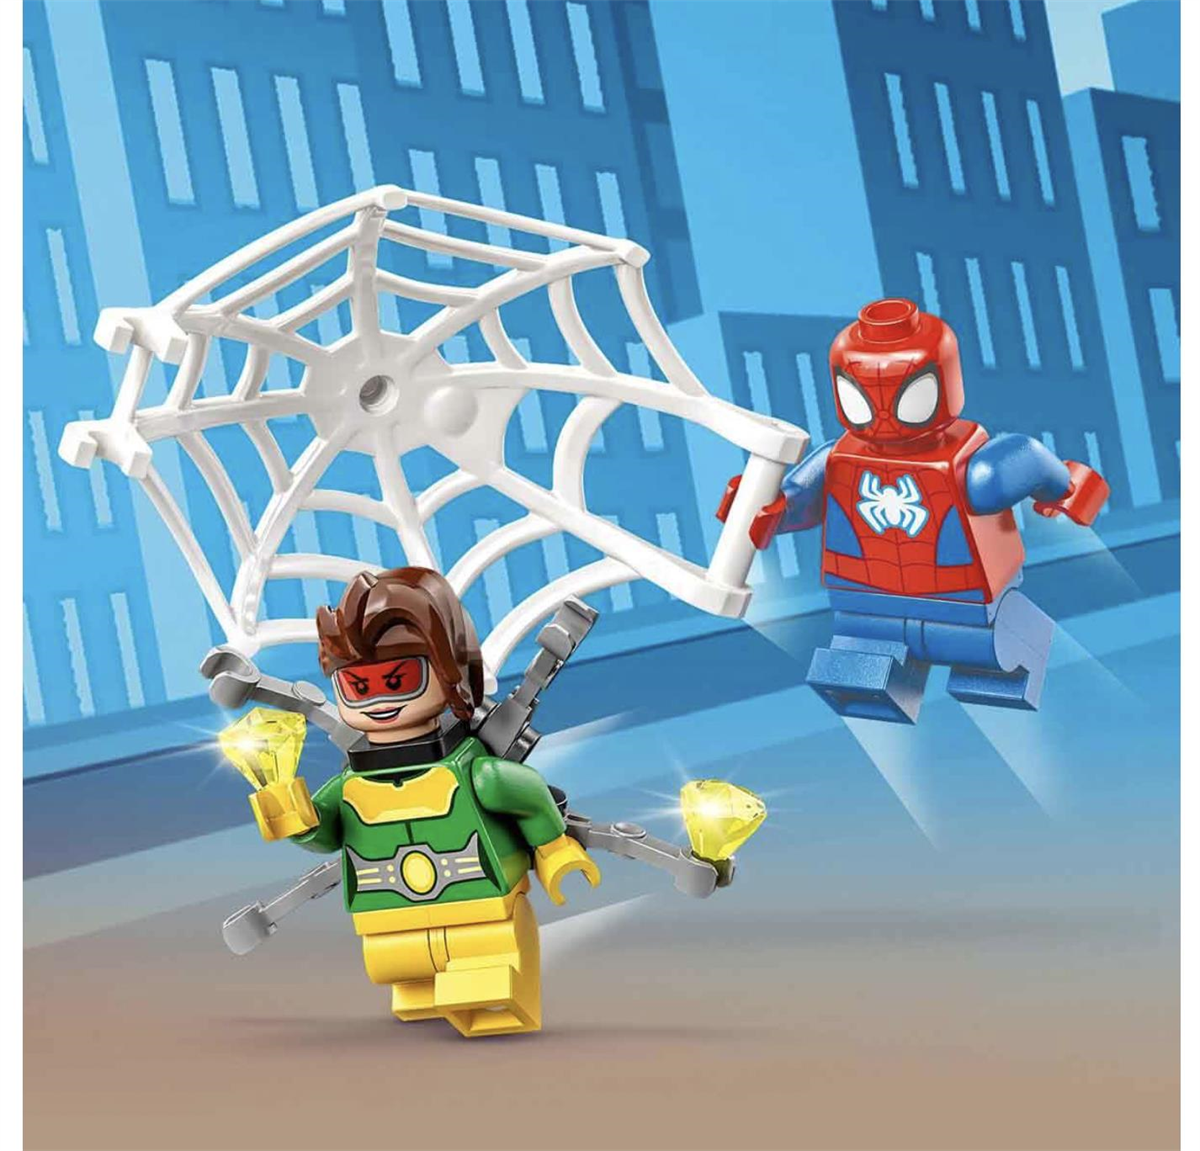 Lego Marvel Örümcek Adam’ın Arabası ve Doktor Oktopus 10789 | Toysall